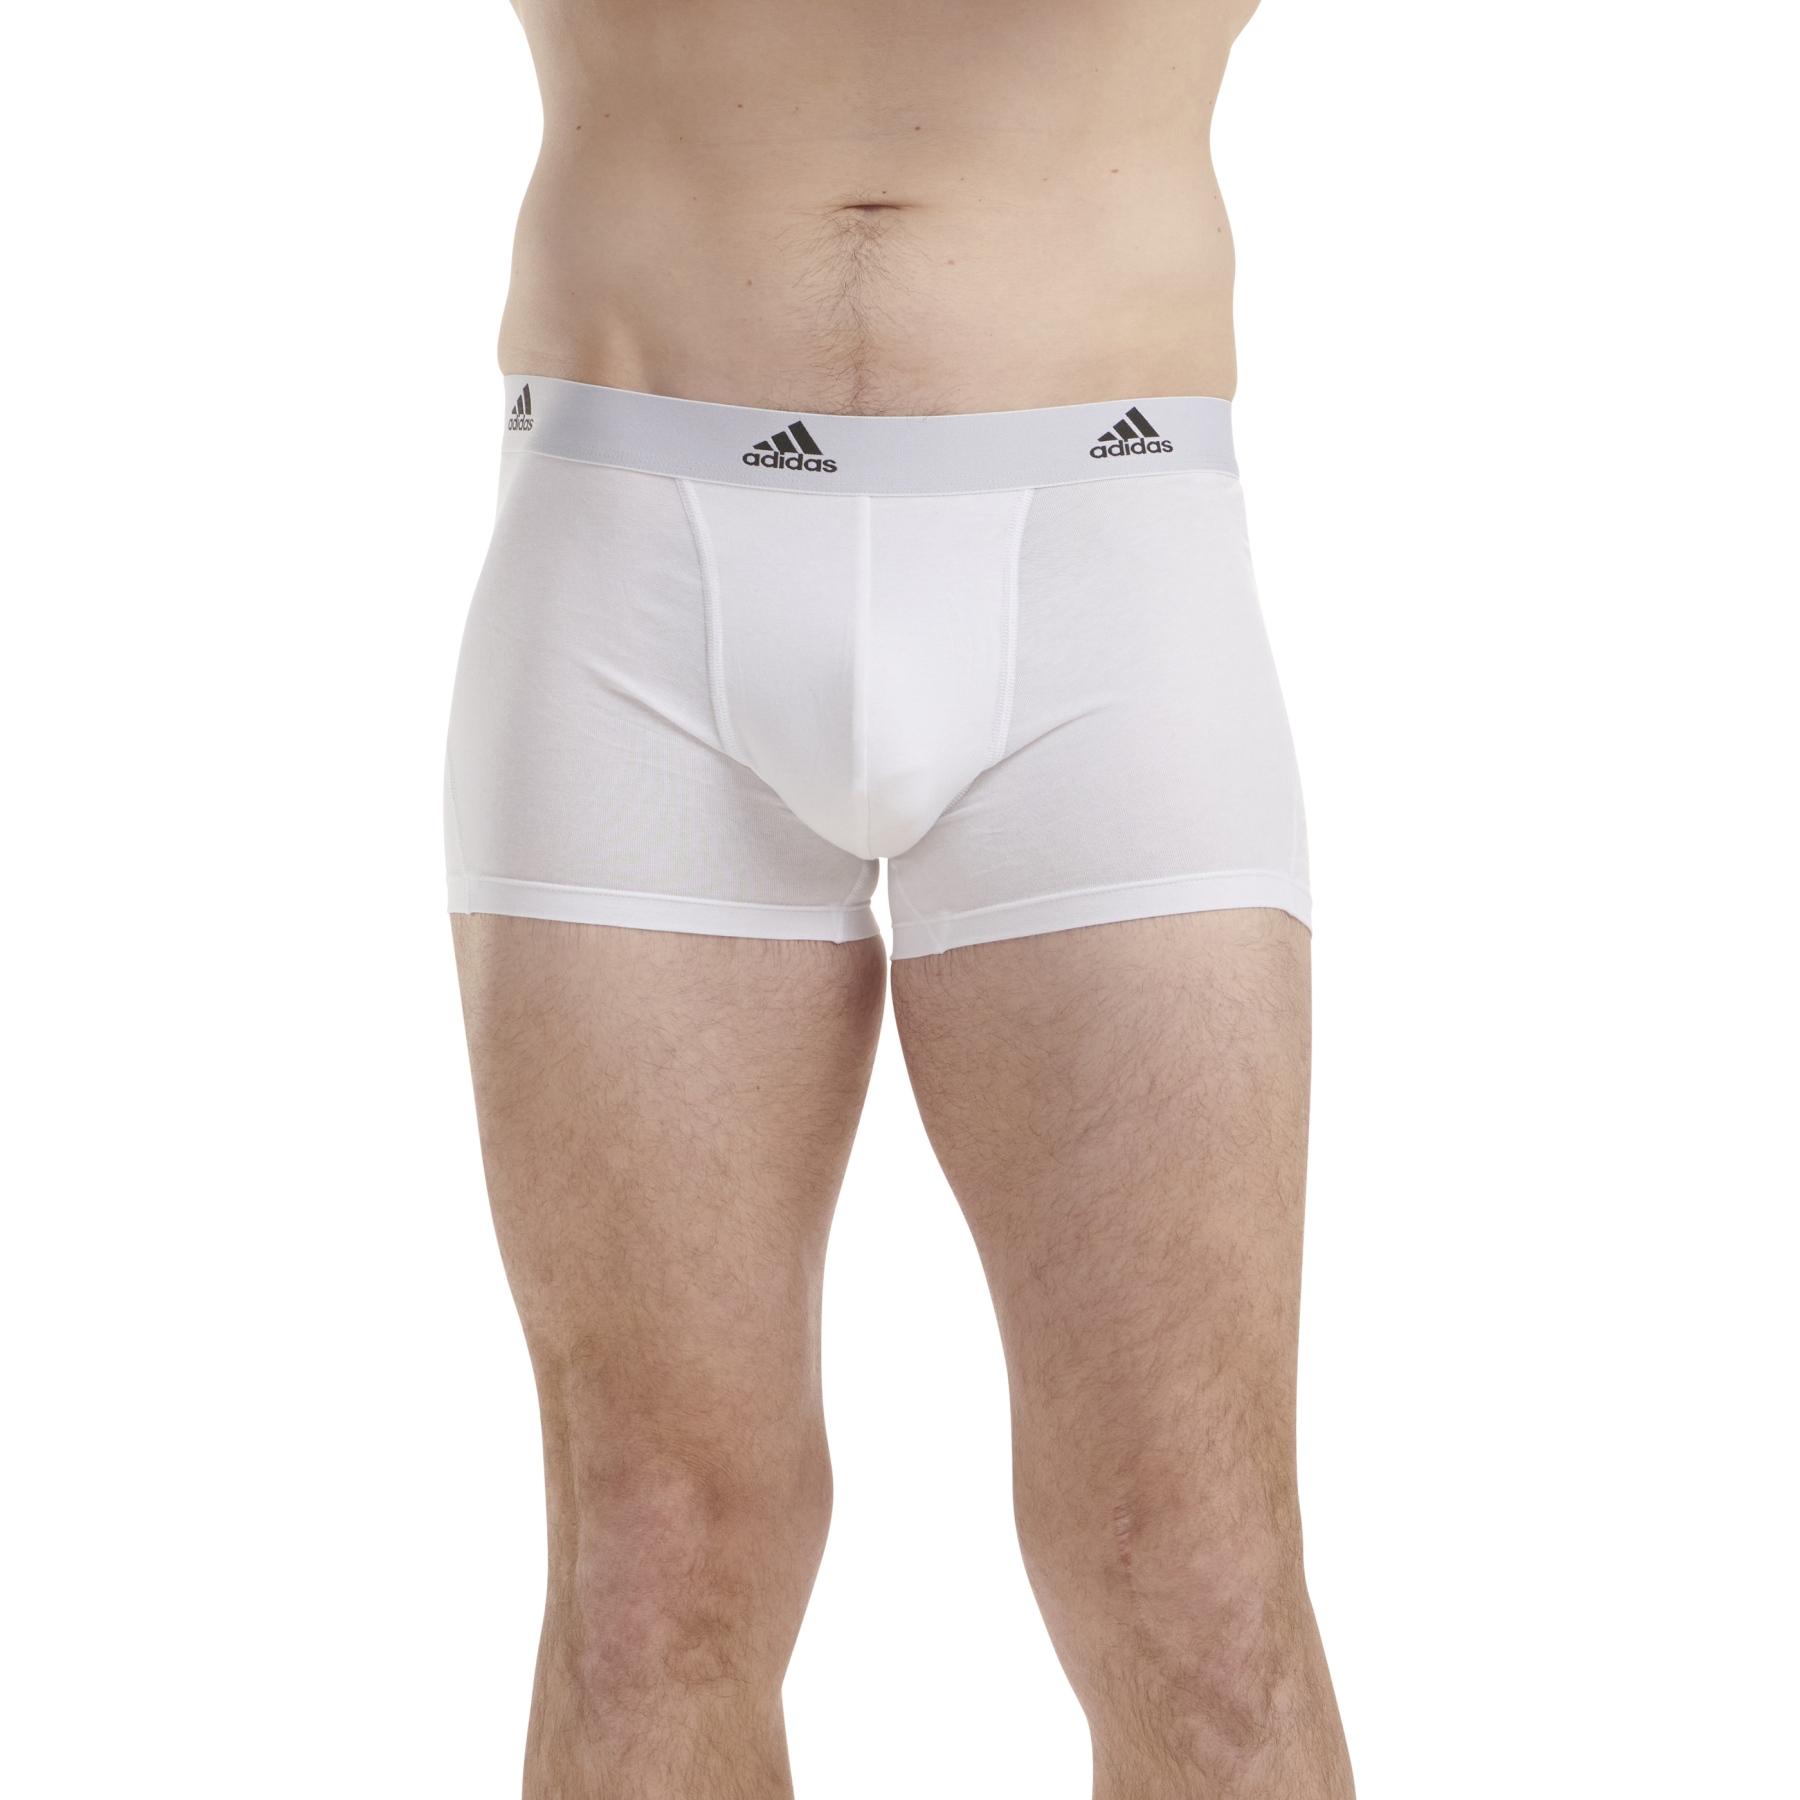 adidas Sports Underwear Maillot de Corps sans Manches Homme - Active Flex  Cotton 3 - 2 Pack - 000-noir